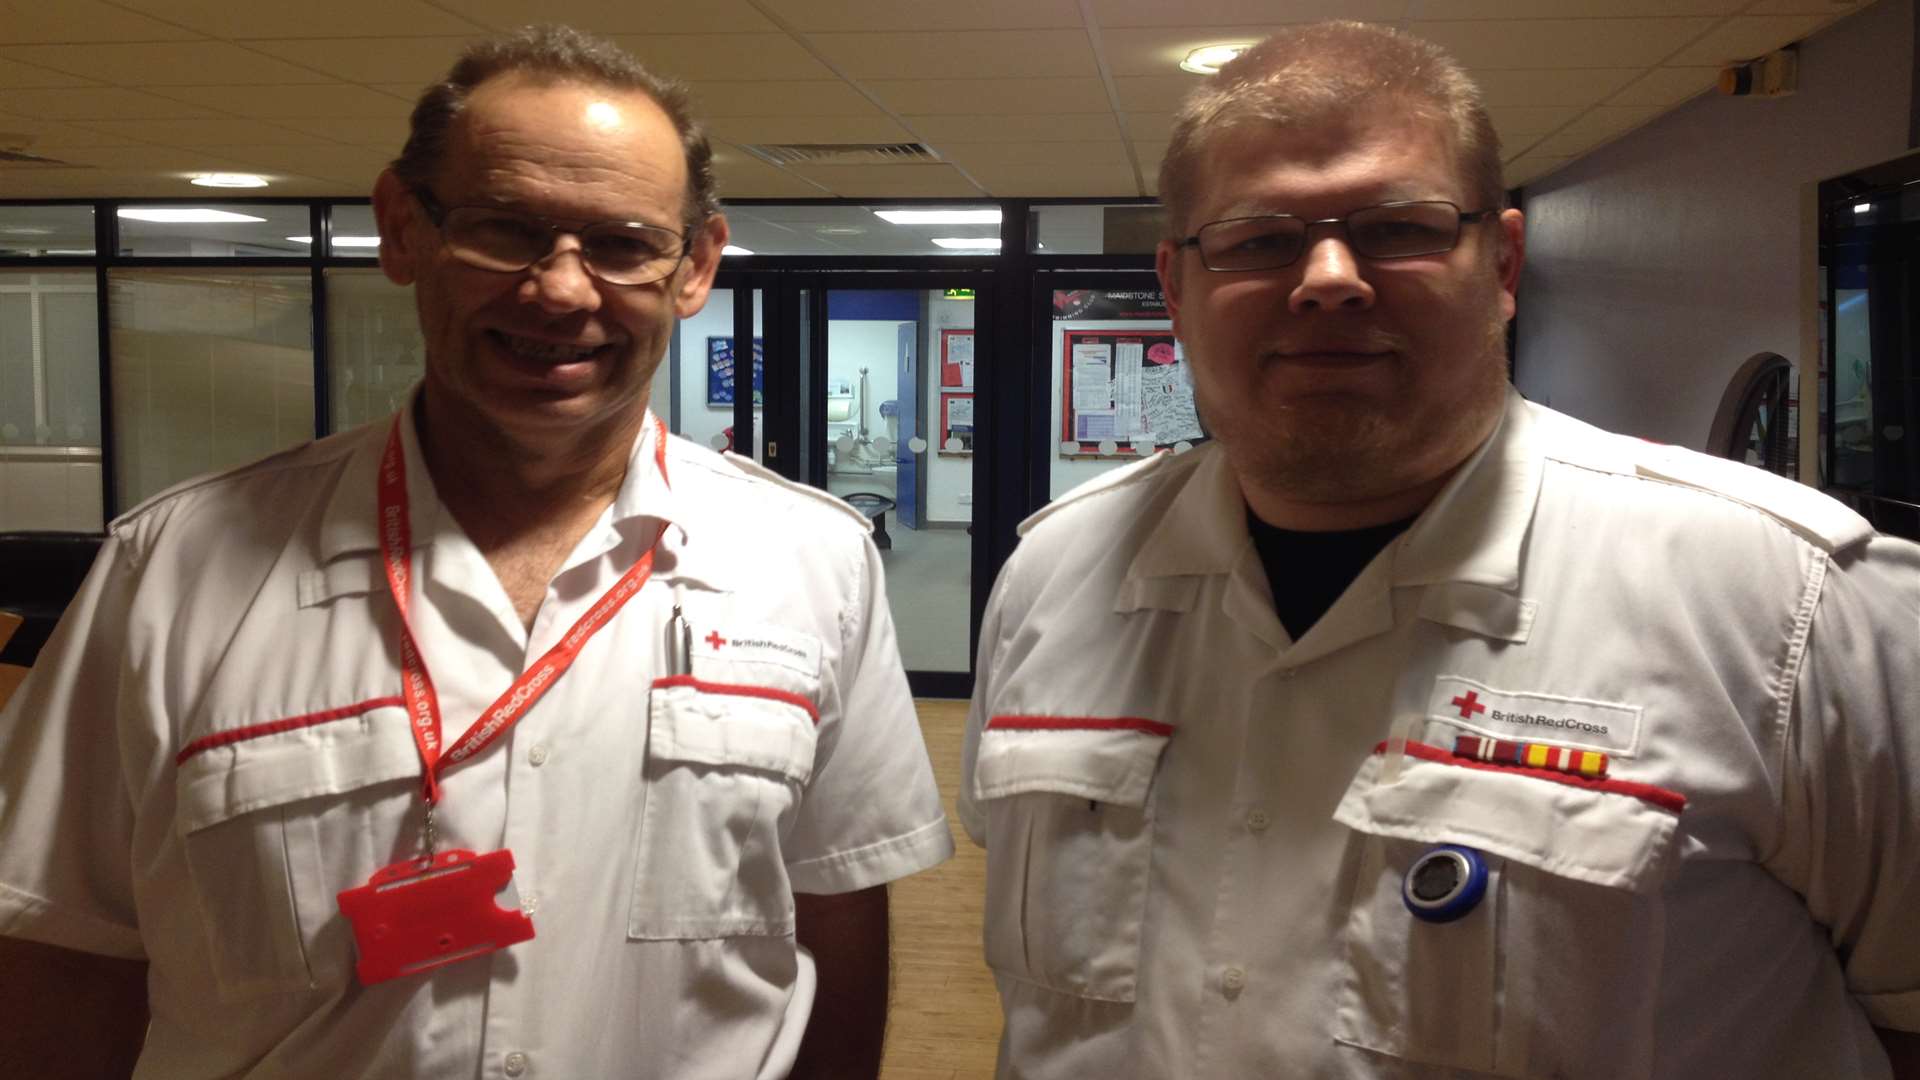 Red Cross volunteers Bryn Price and Graham East